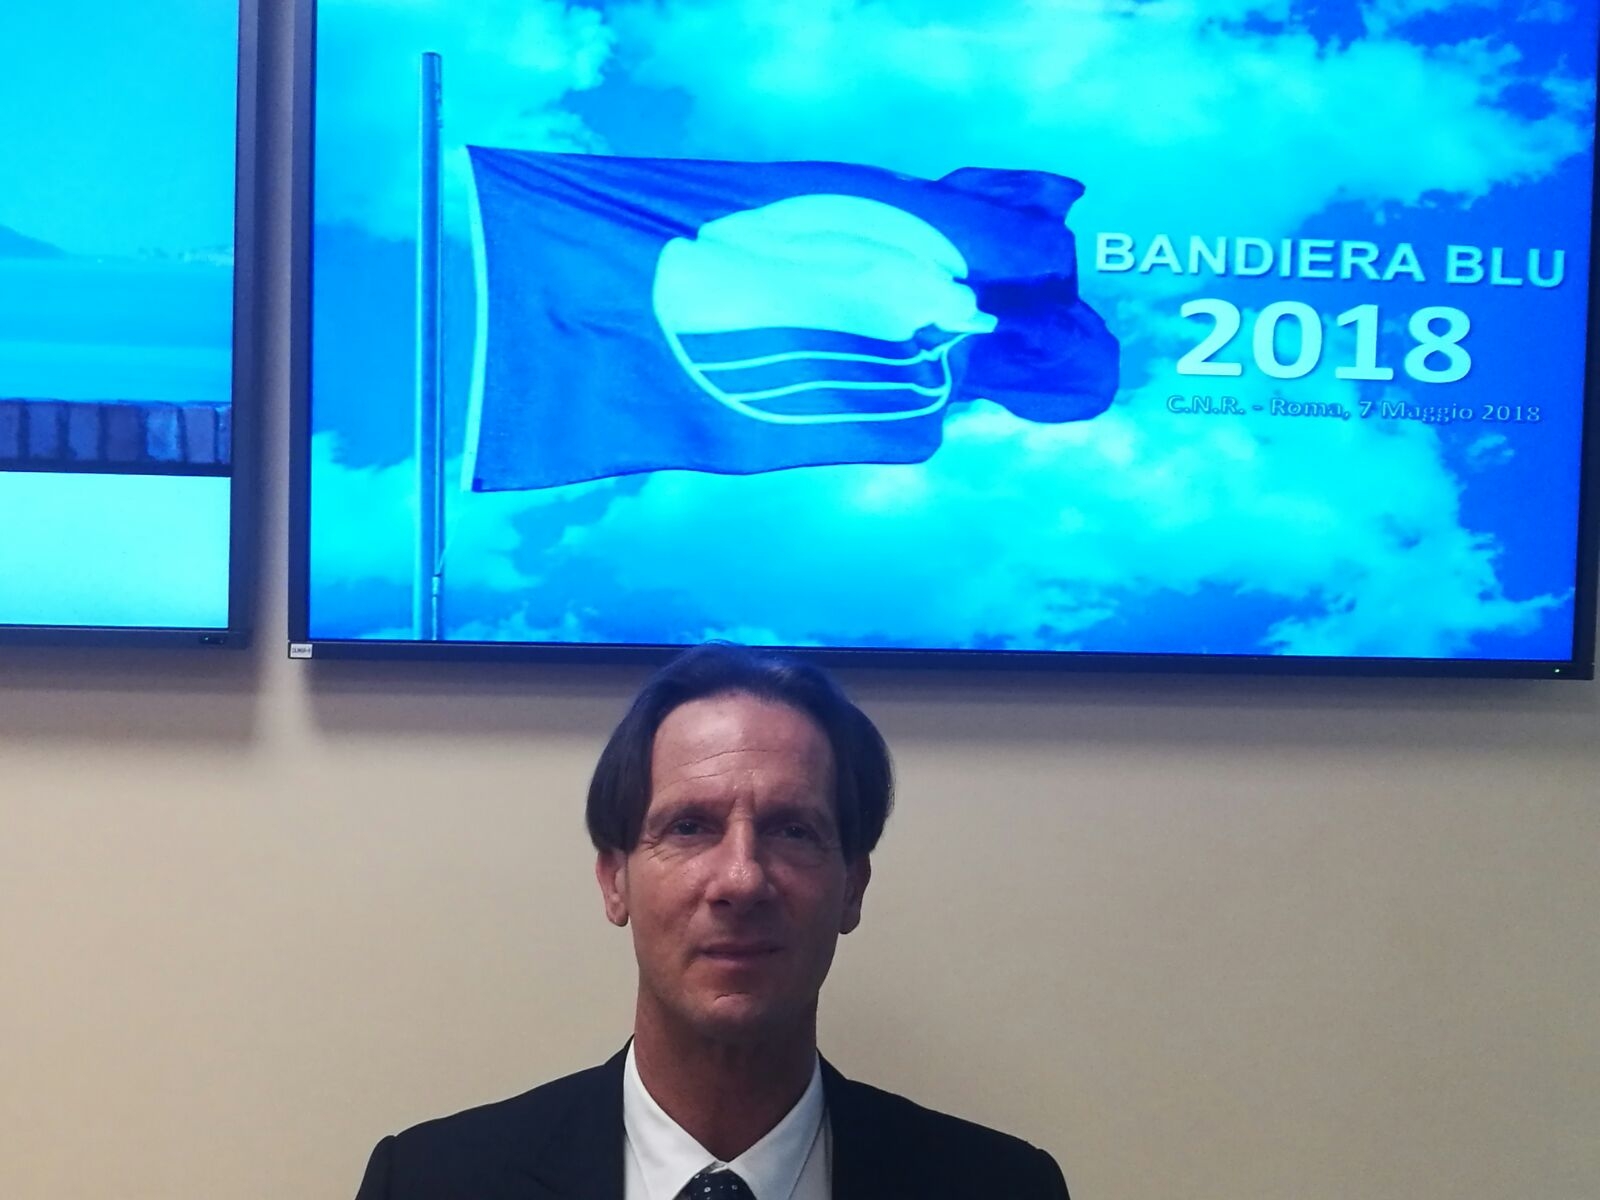 FOTO 2 il sindaco Mastromauro e la Bandiera Blu 2018.JPG